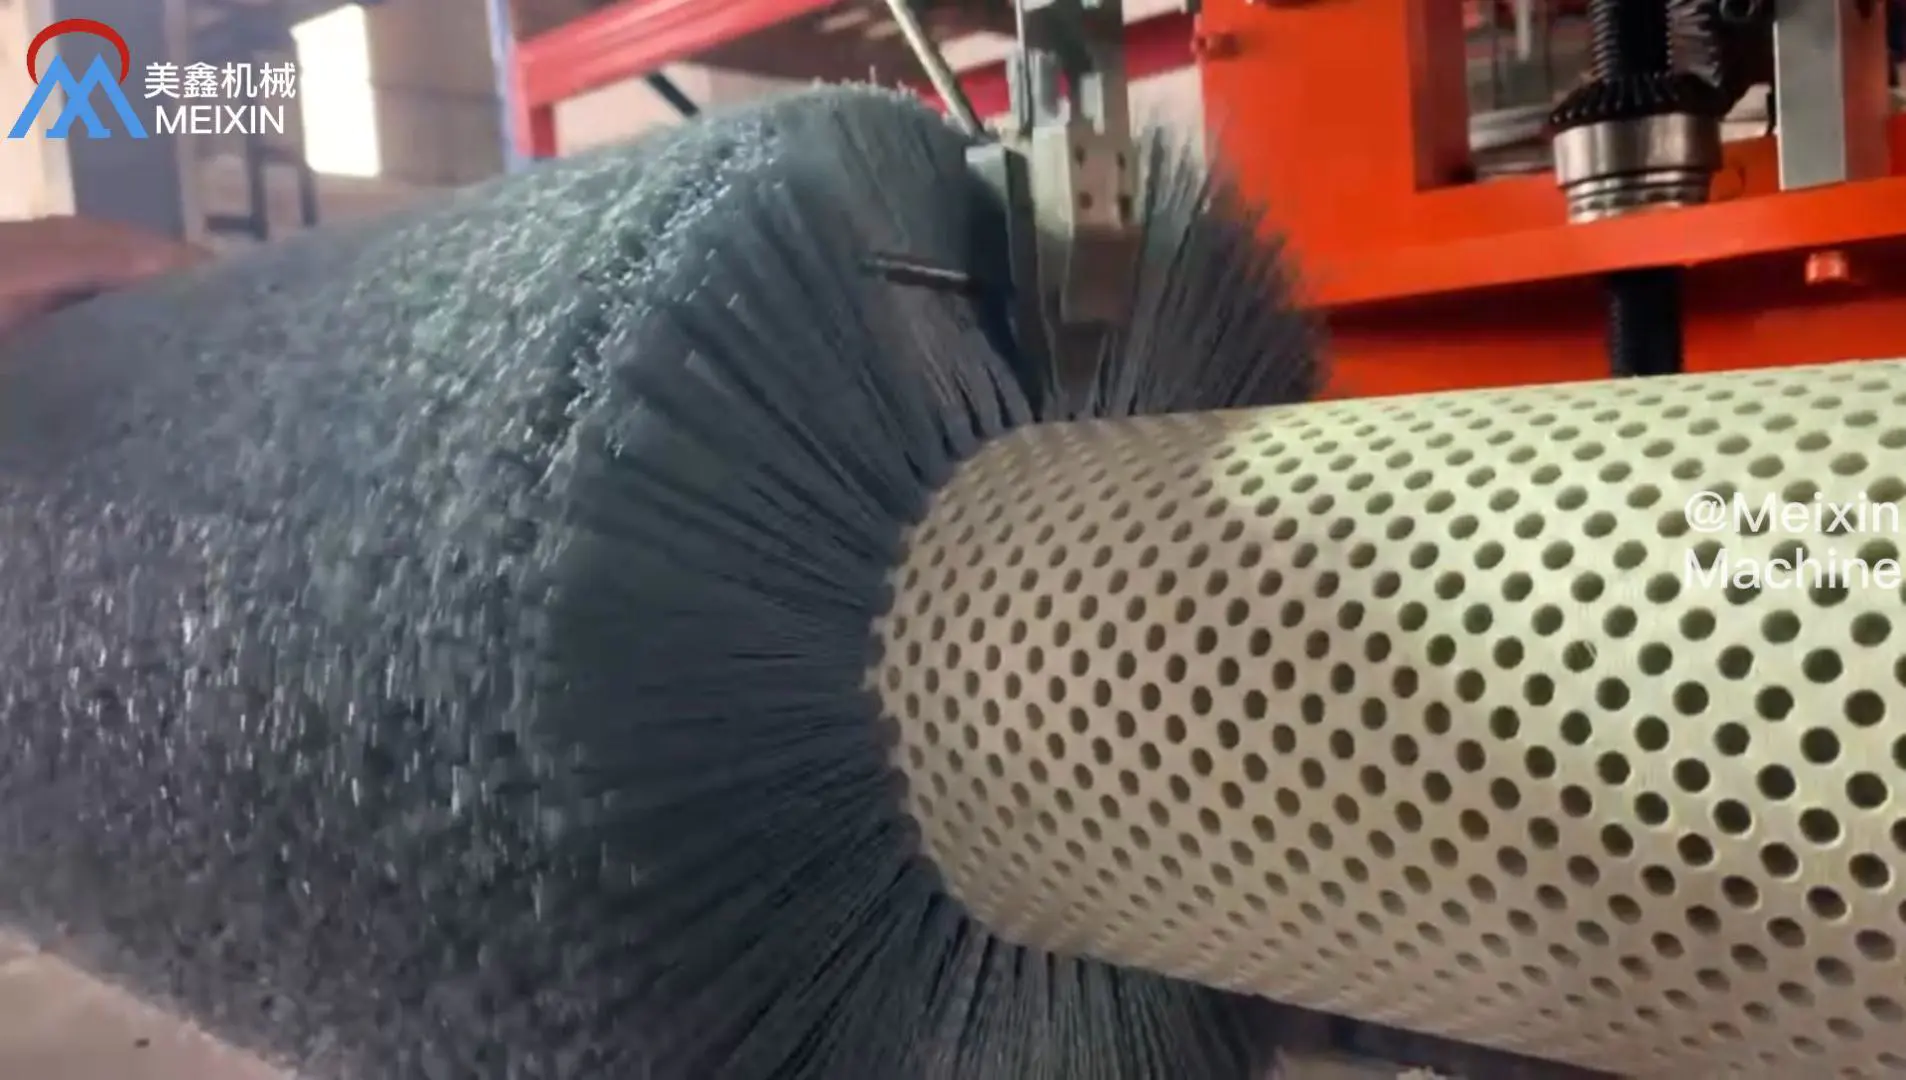 Strict Standard Silicon Carbide Bristles Roller Brush Machine